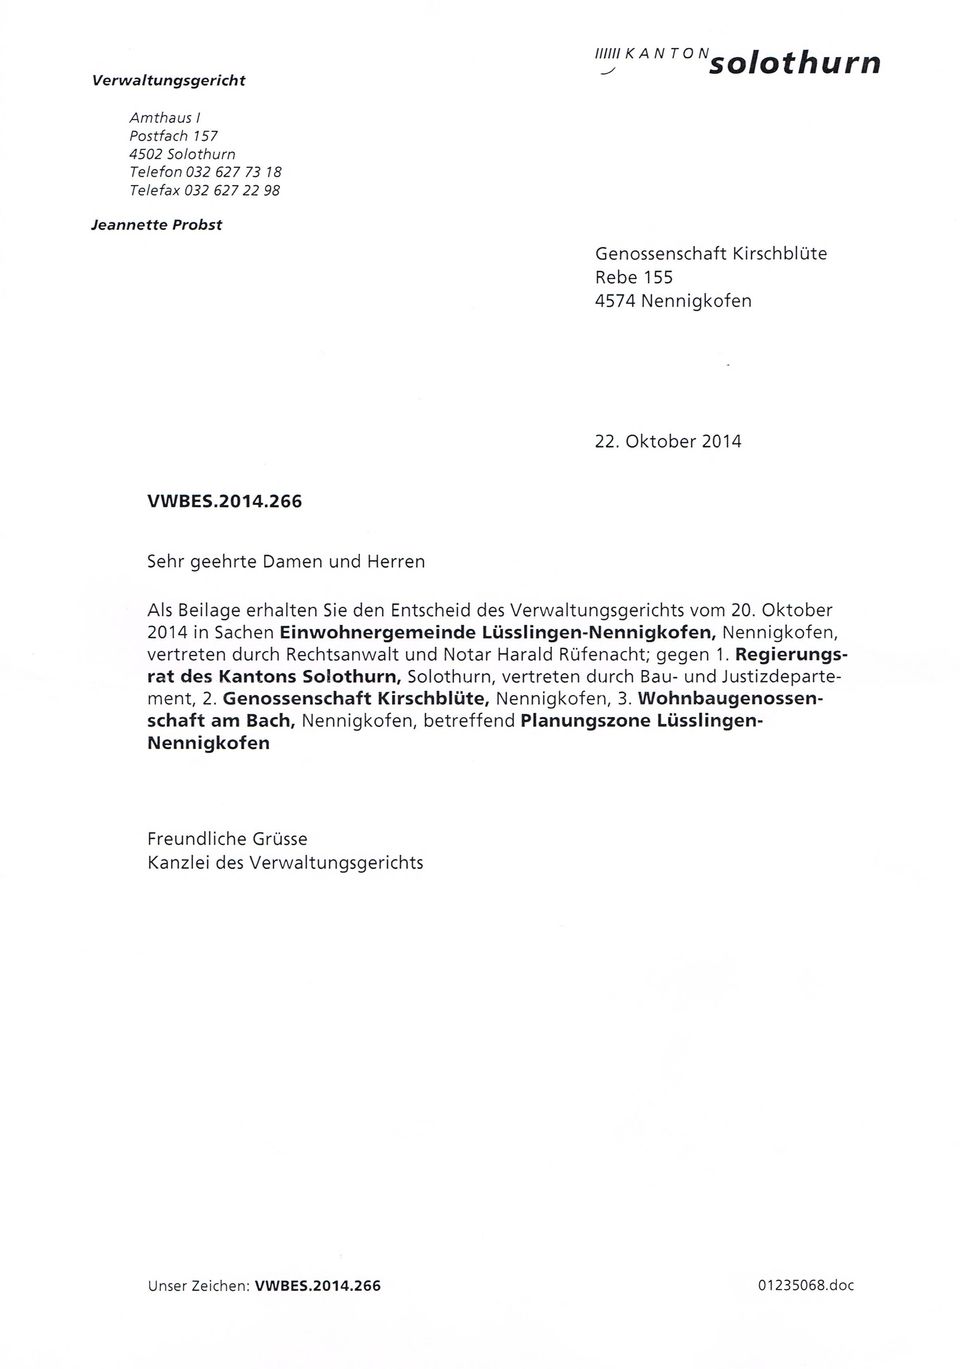 Oktober 2014 in Sachen Einwohnergemeinde Lüsslingen-Nennigkofen, Nennigkofen, vertreten durch Rechtsanwalt und Notar Harald Rüfenacht; gegen 1.